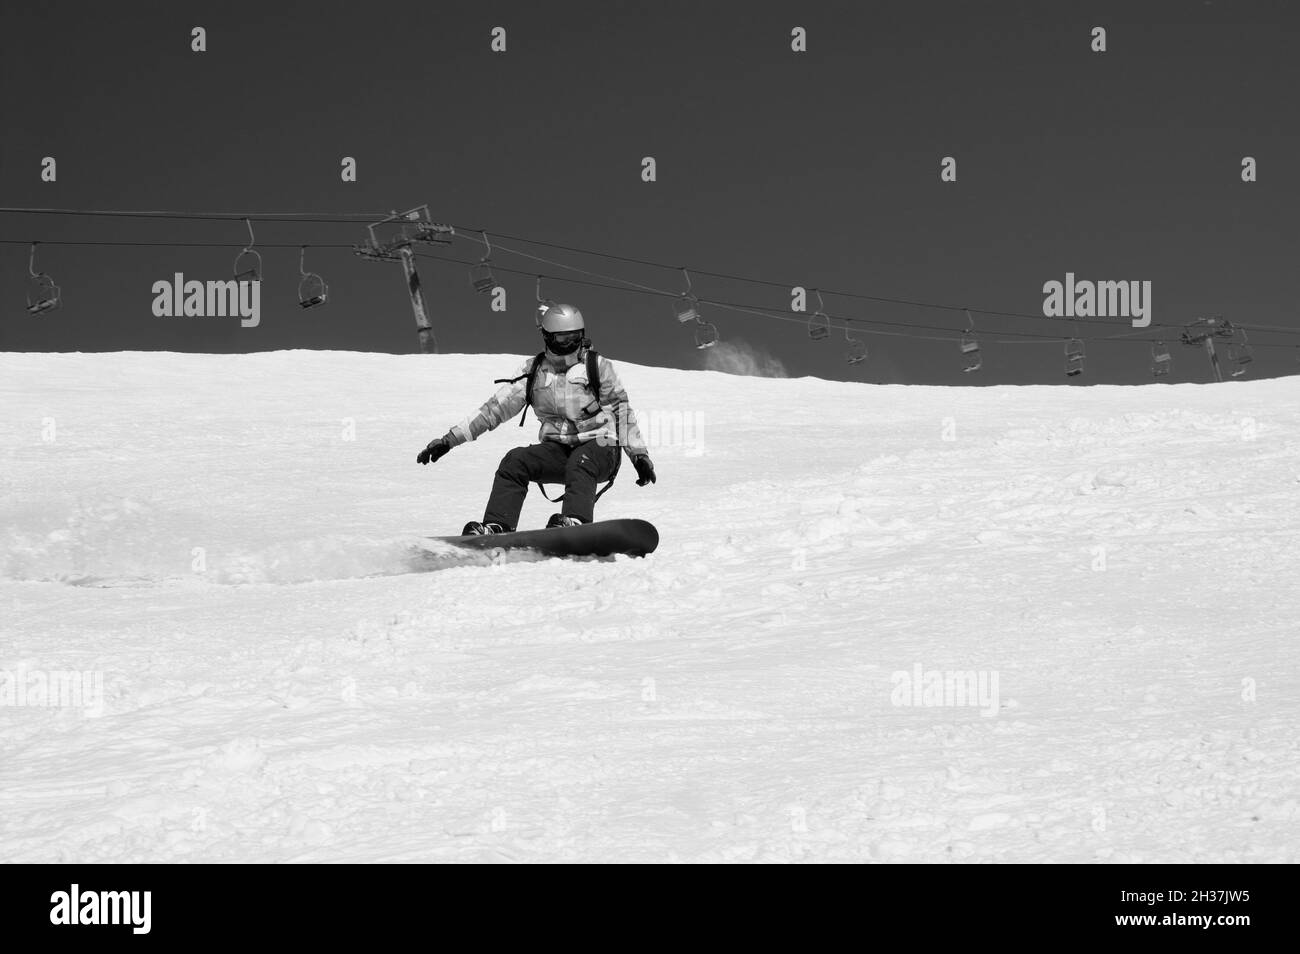 La snowboardeuse descend sur une piste de ski enneigée dans les montagnes d'hiver par beau temps.Ancien télésiège en arrière-plan.Caucase montagnes, région Dombay.Noir et blanc Banque D'Images